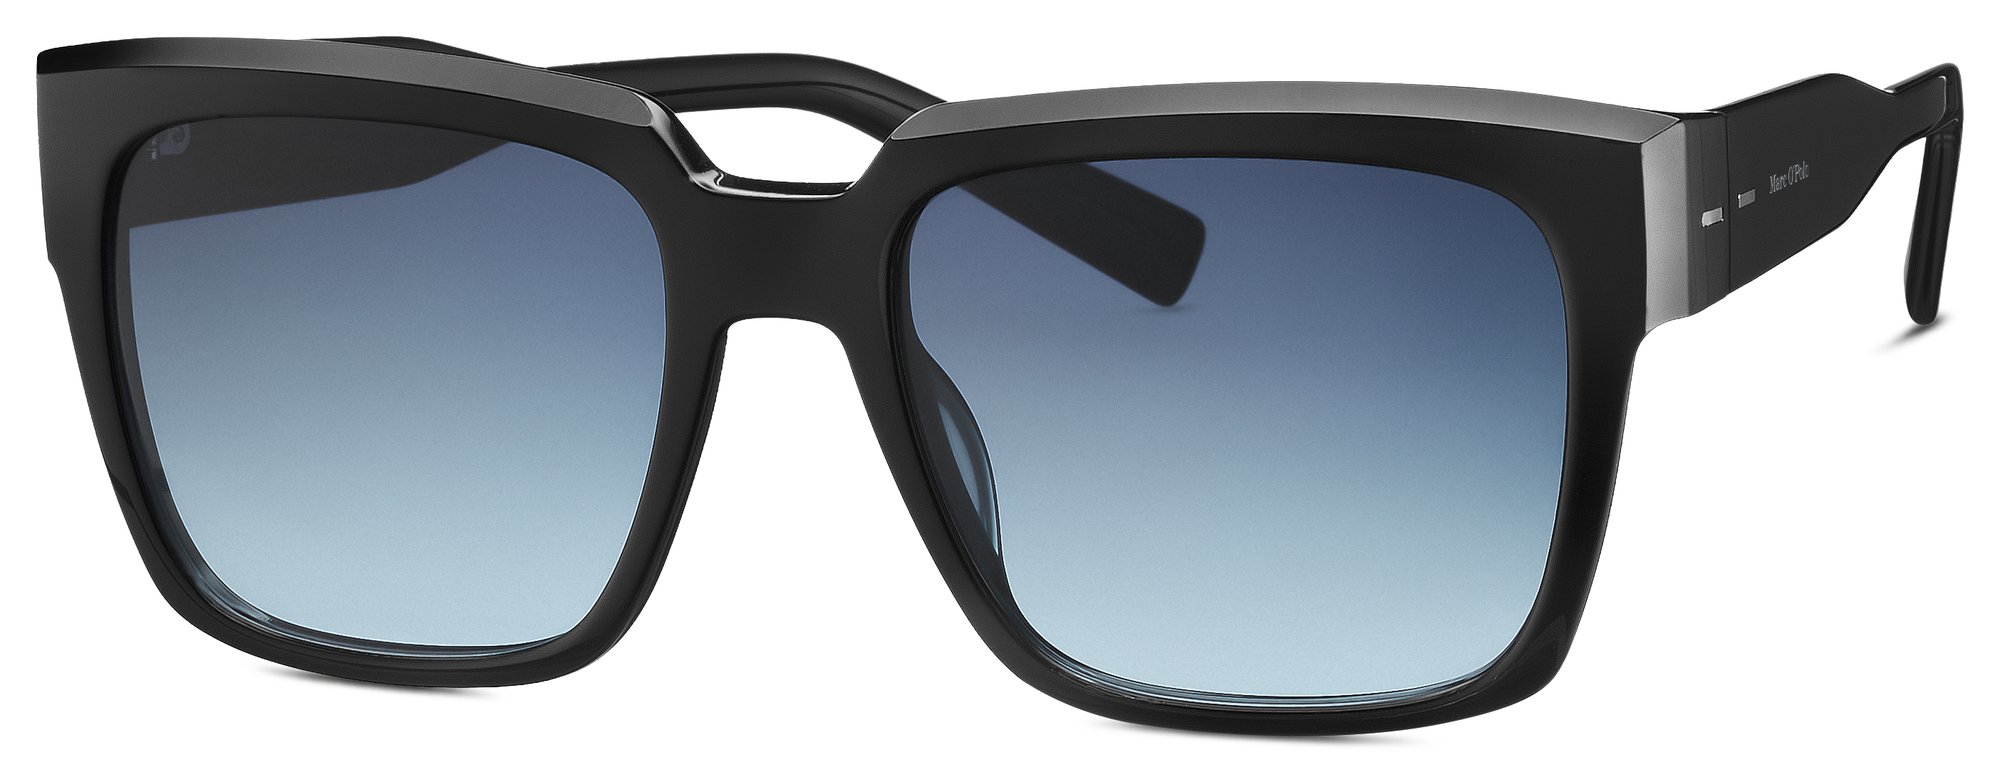 Das Bild zeigt die Sonnenbrille 506211 10 von der Marke Marc O‘Polo in schwarz.